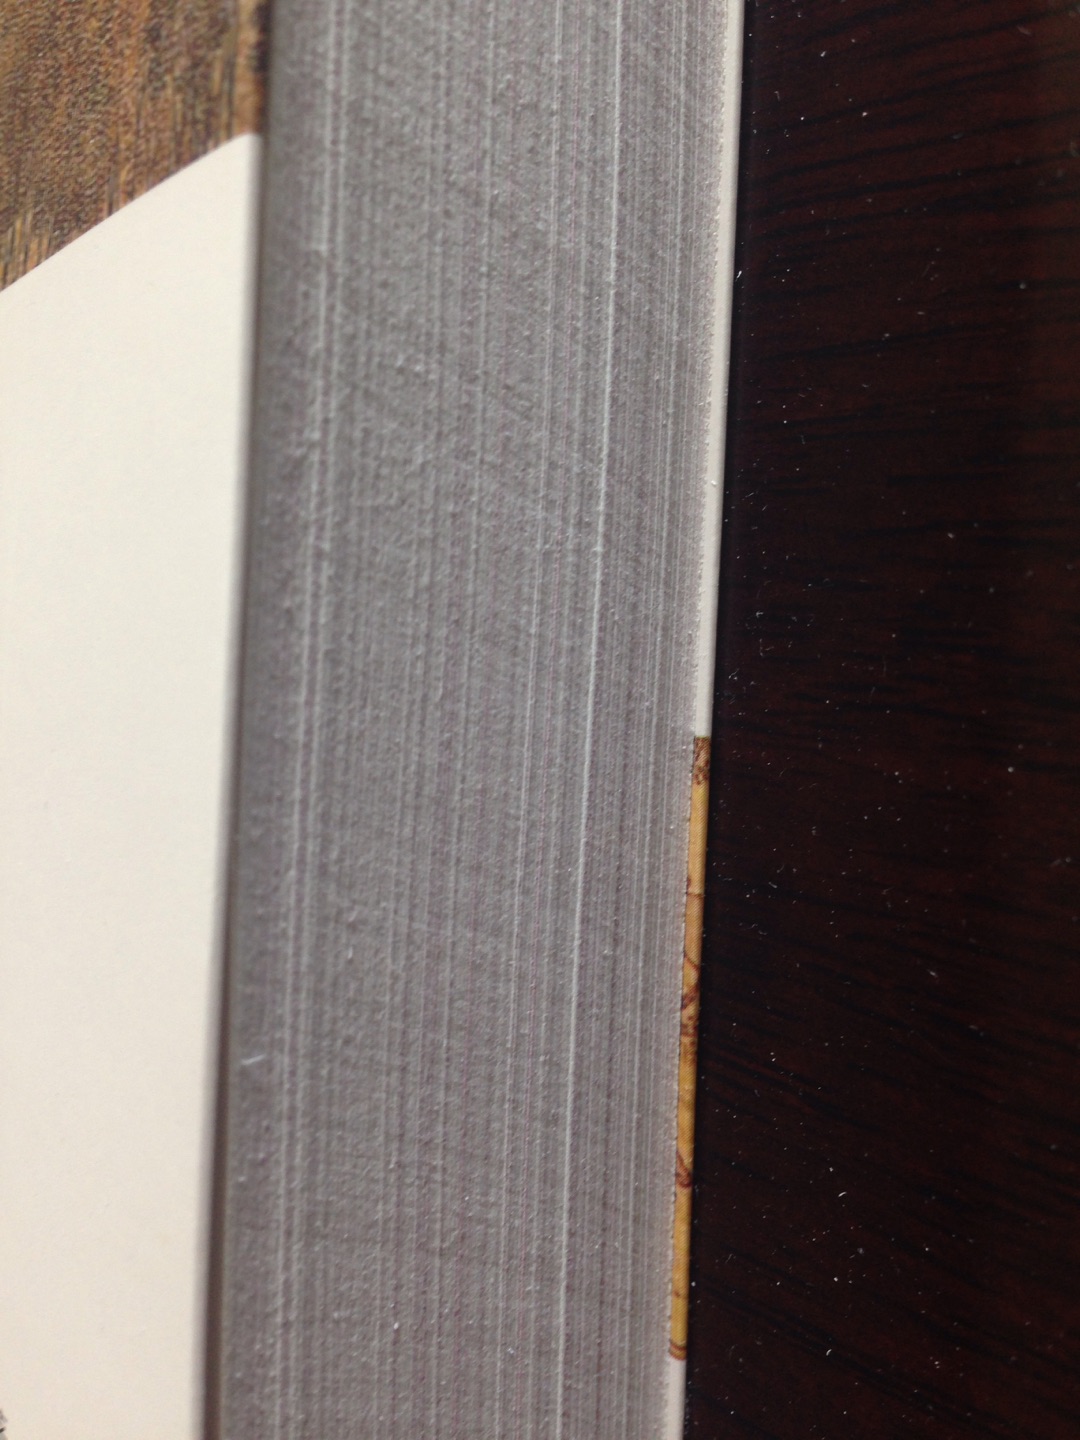 这本书侧面切页的水平真是一言难尽...翻一页就要掉纸屑..不知道是单单这本书的工艺问题还是印刷厂生产线的问题